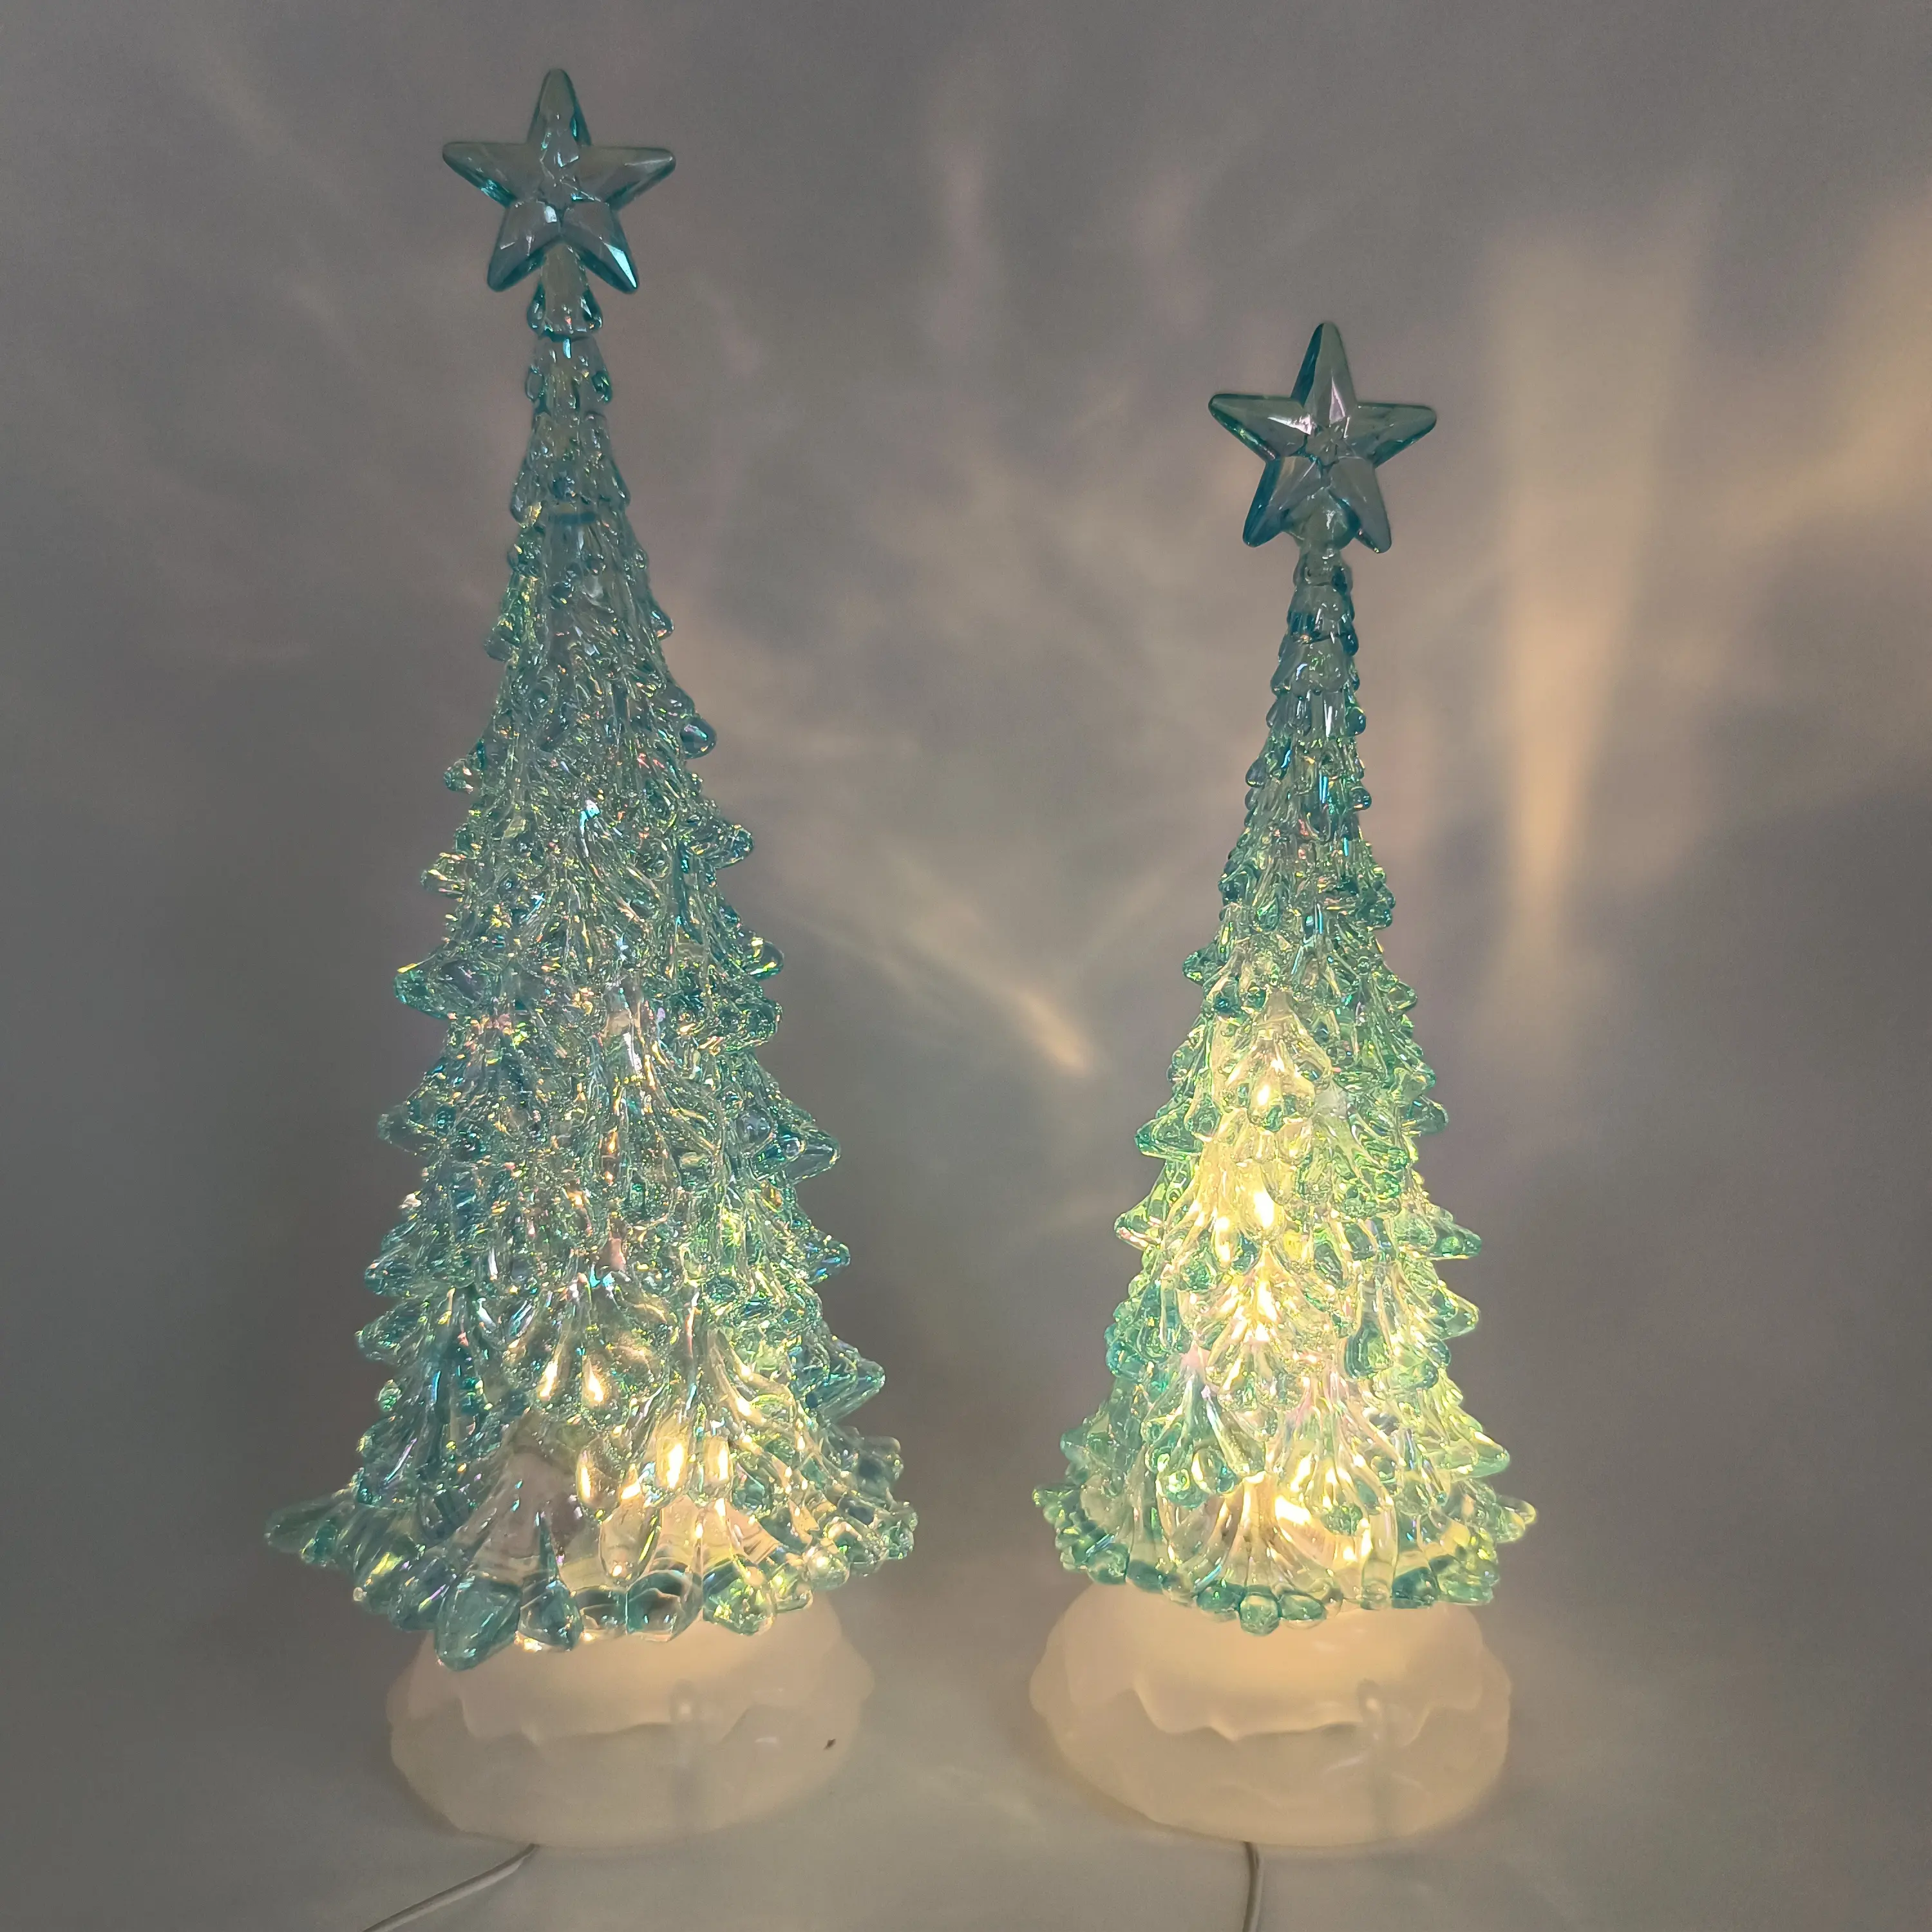 شجرة عيد الميلاد الاصطناعية من الأكريليك المضيئة بالكريستال بتقنية ليد تُباع بالجملة بسعر المصنع وبألوان مخصصة